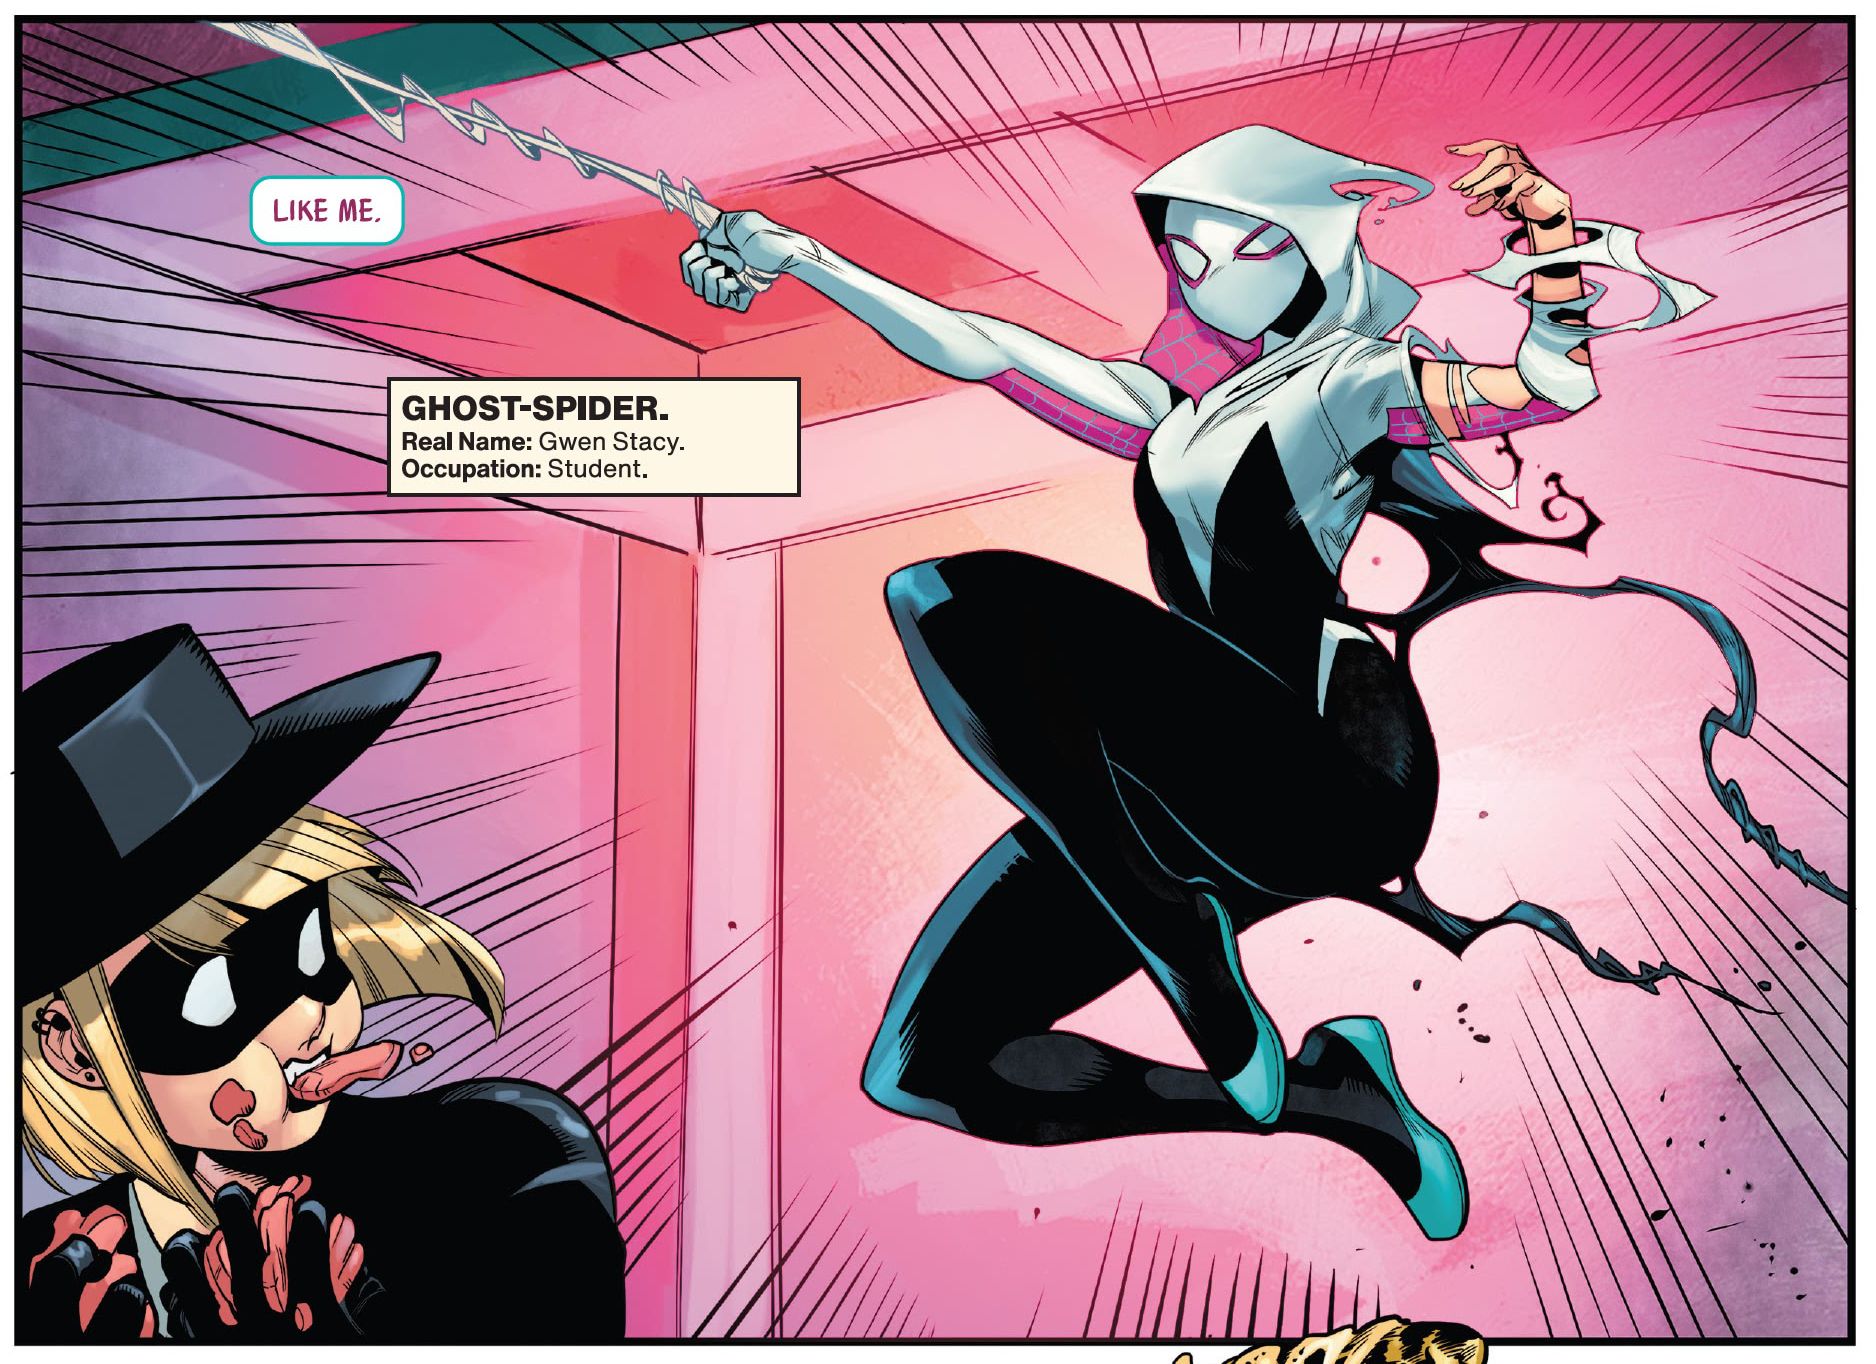 Spider-Gwen fights the Bodega Bandit